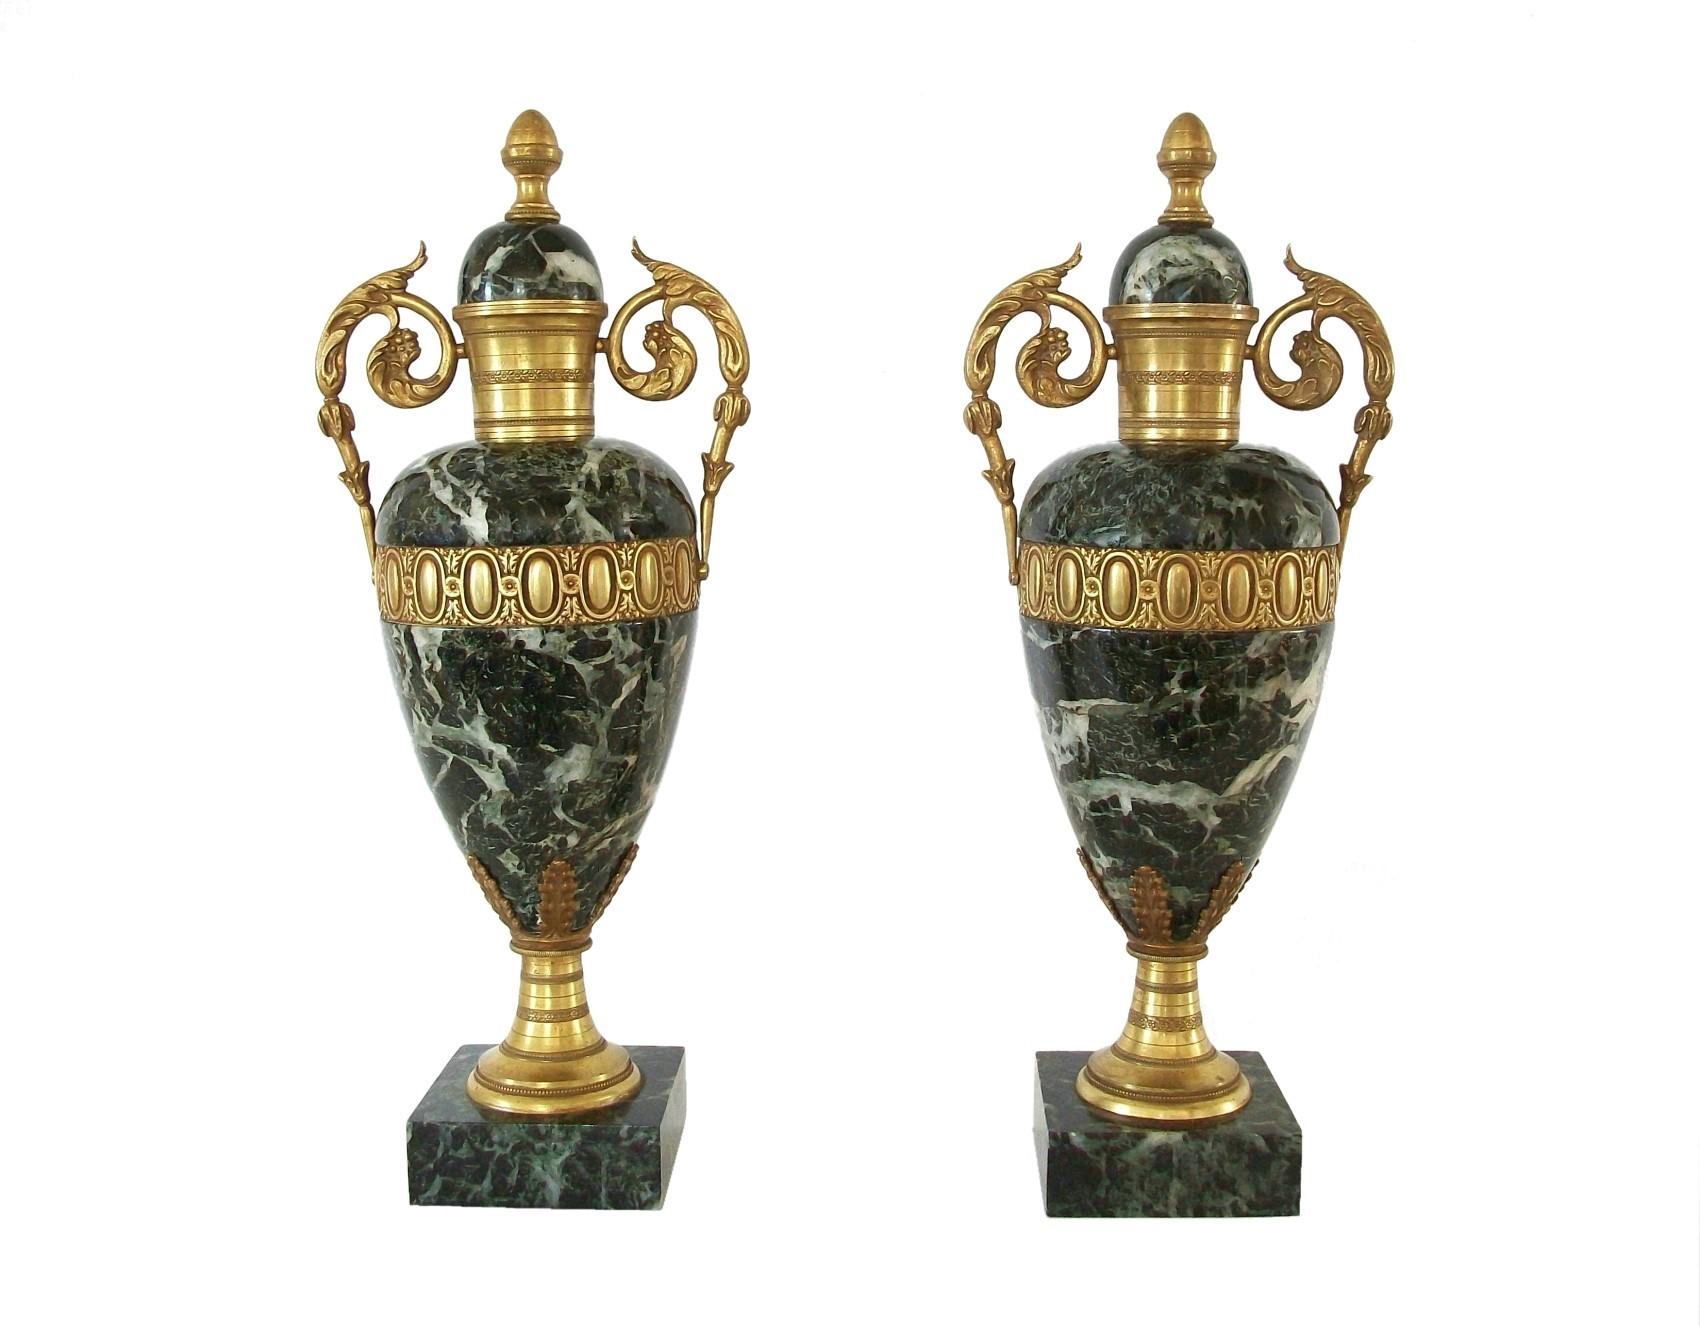 Paire d'urnes de style Louis XVI en marbre vert antique et bronze doré - avec de belles ciselures et moulages sur les éléments en bronze - couvercles non amovibles - assez peu profondes pour s'adapter à la plupart des manteaux de cheminée -